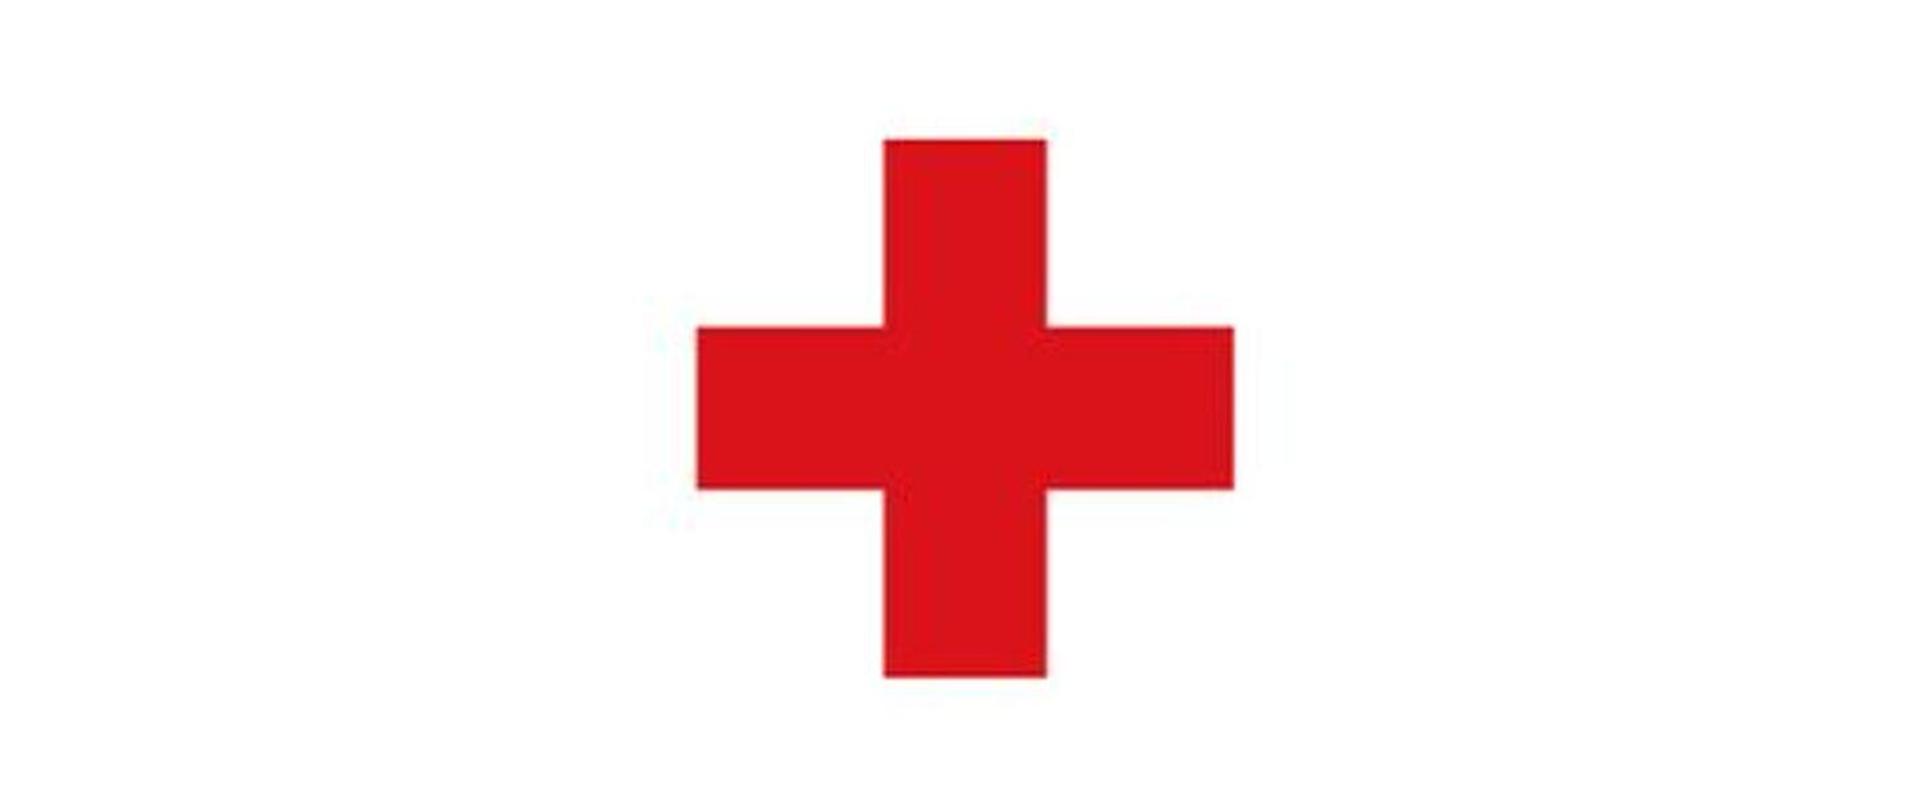 Zdjęcie obrazuje Znak czerwonego krzyża na białym tle